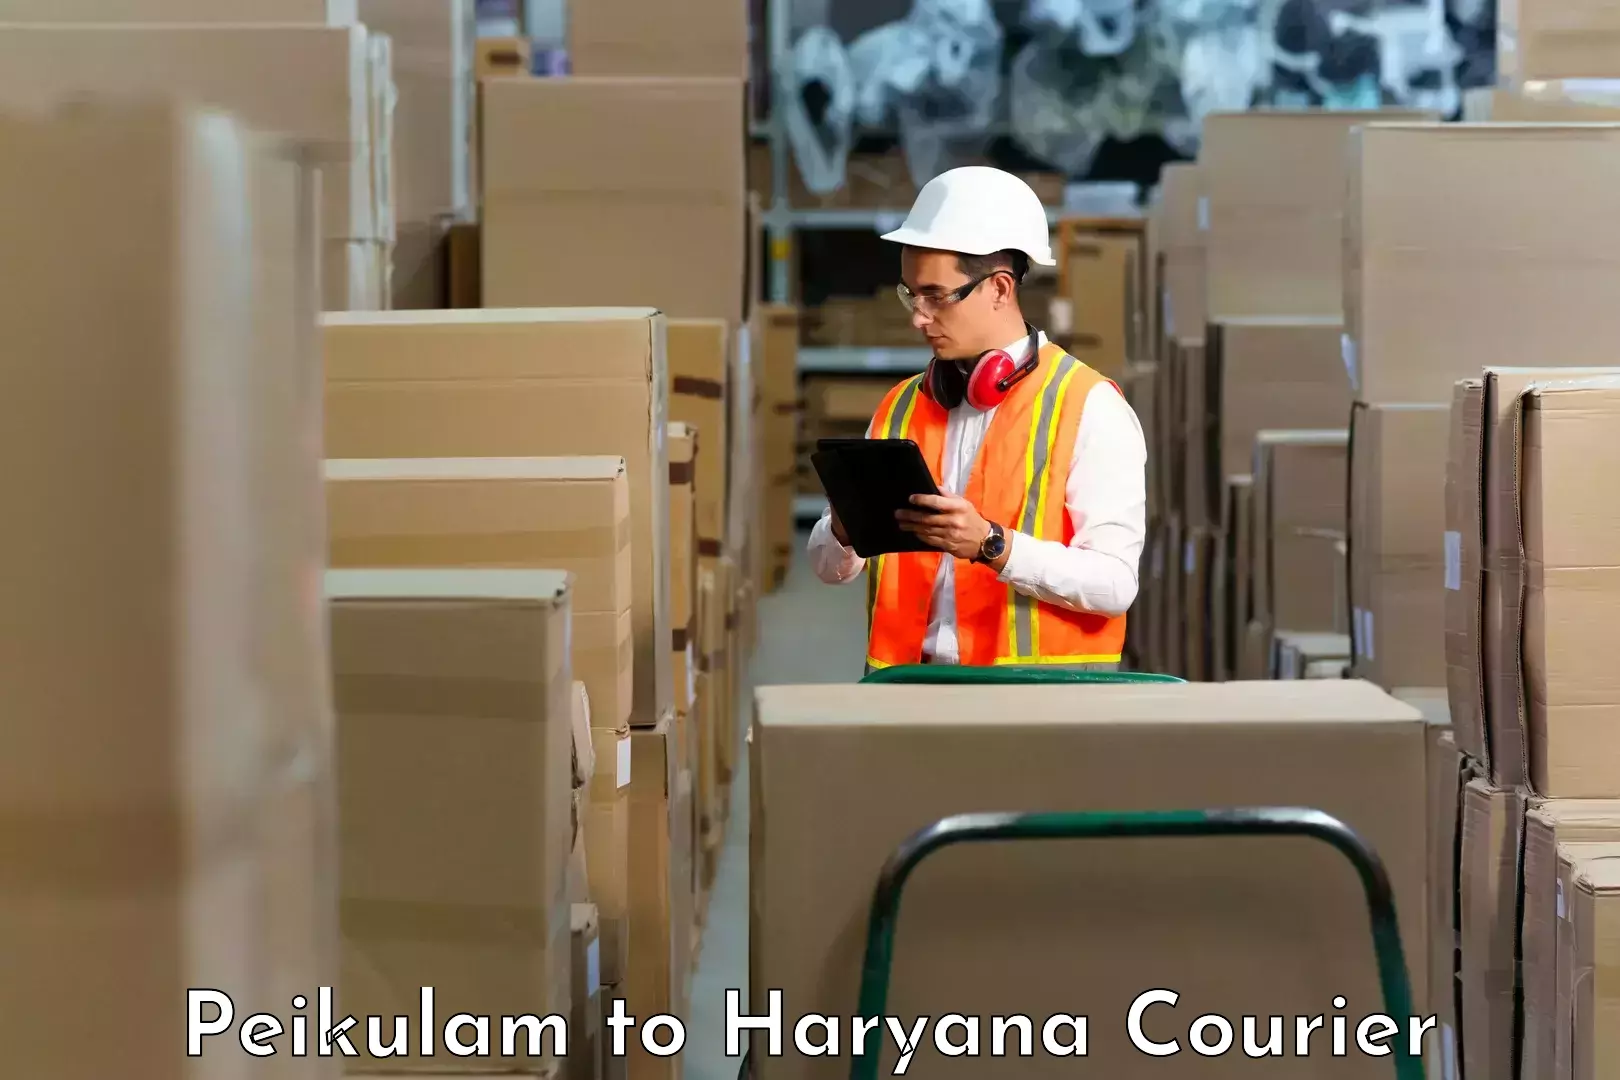 Digital courier platforms Peikulam to NCR Haryana